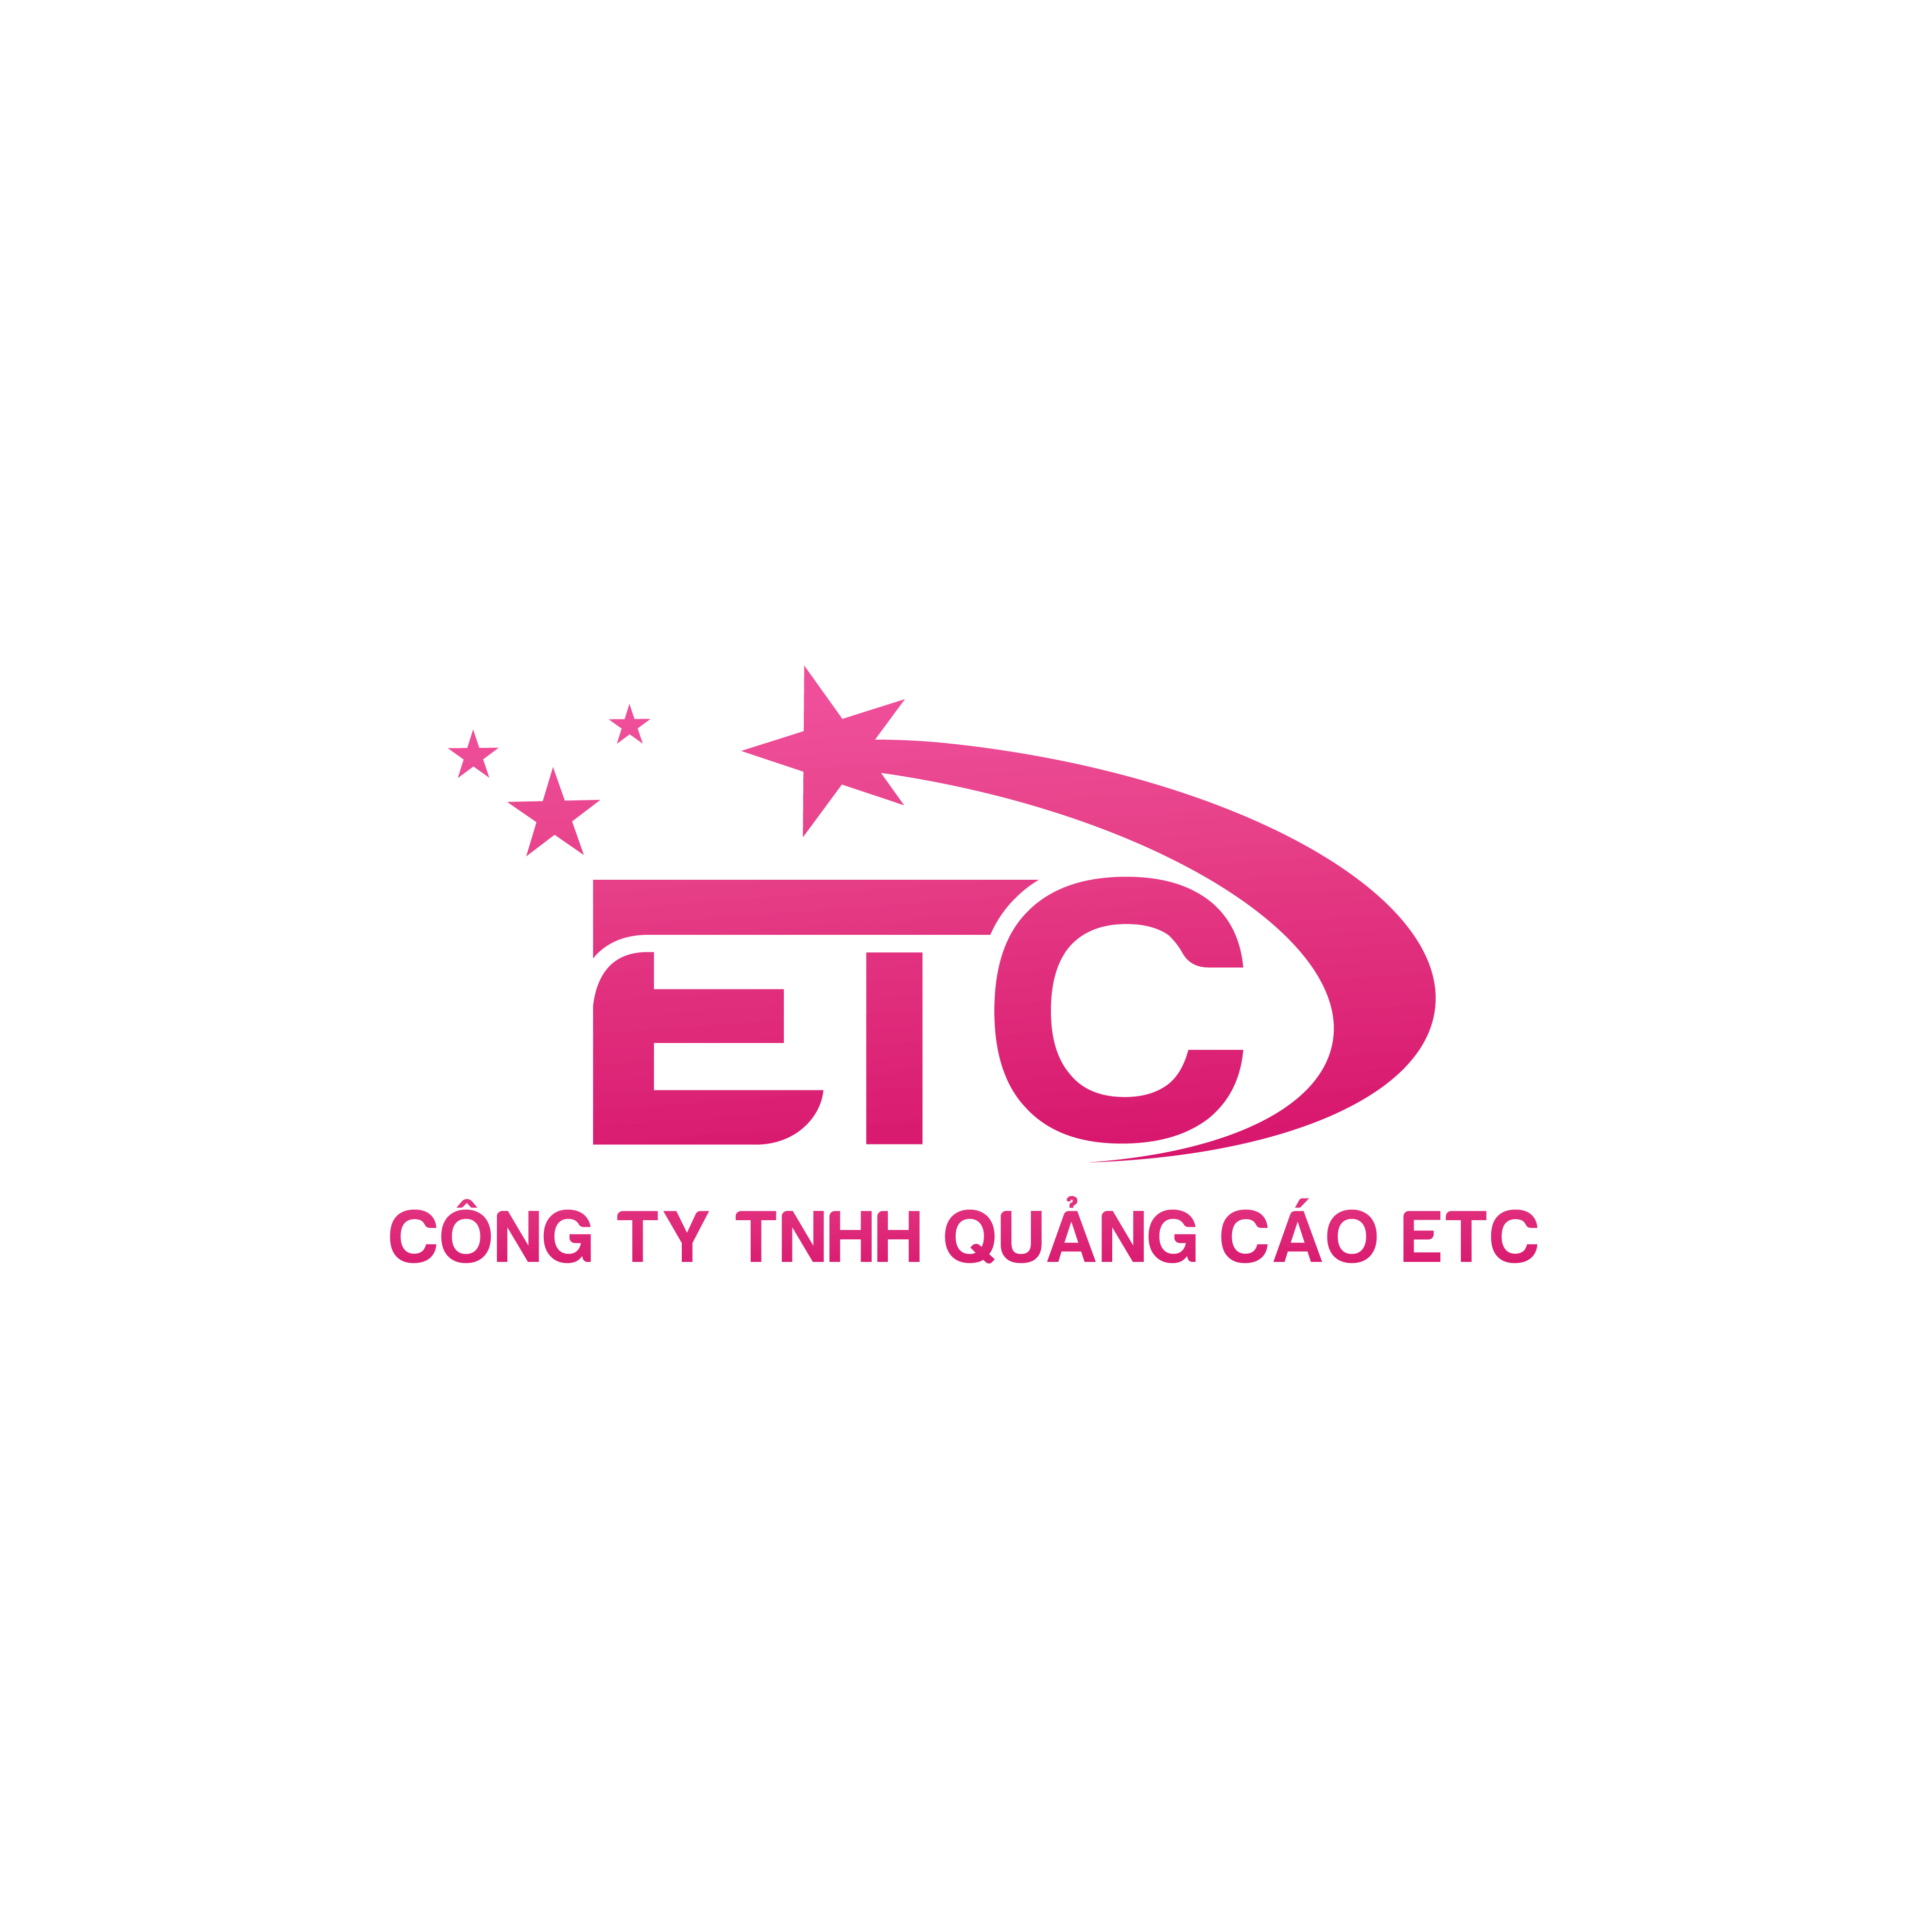 Công ty TNHH Quảng Cáo ETC logo